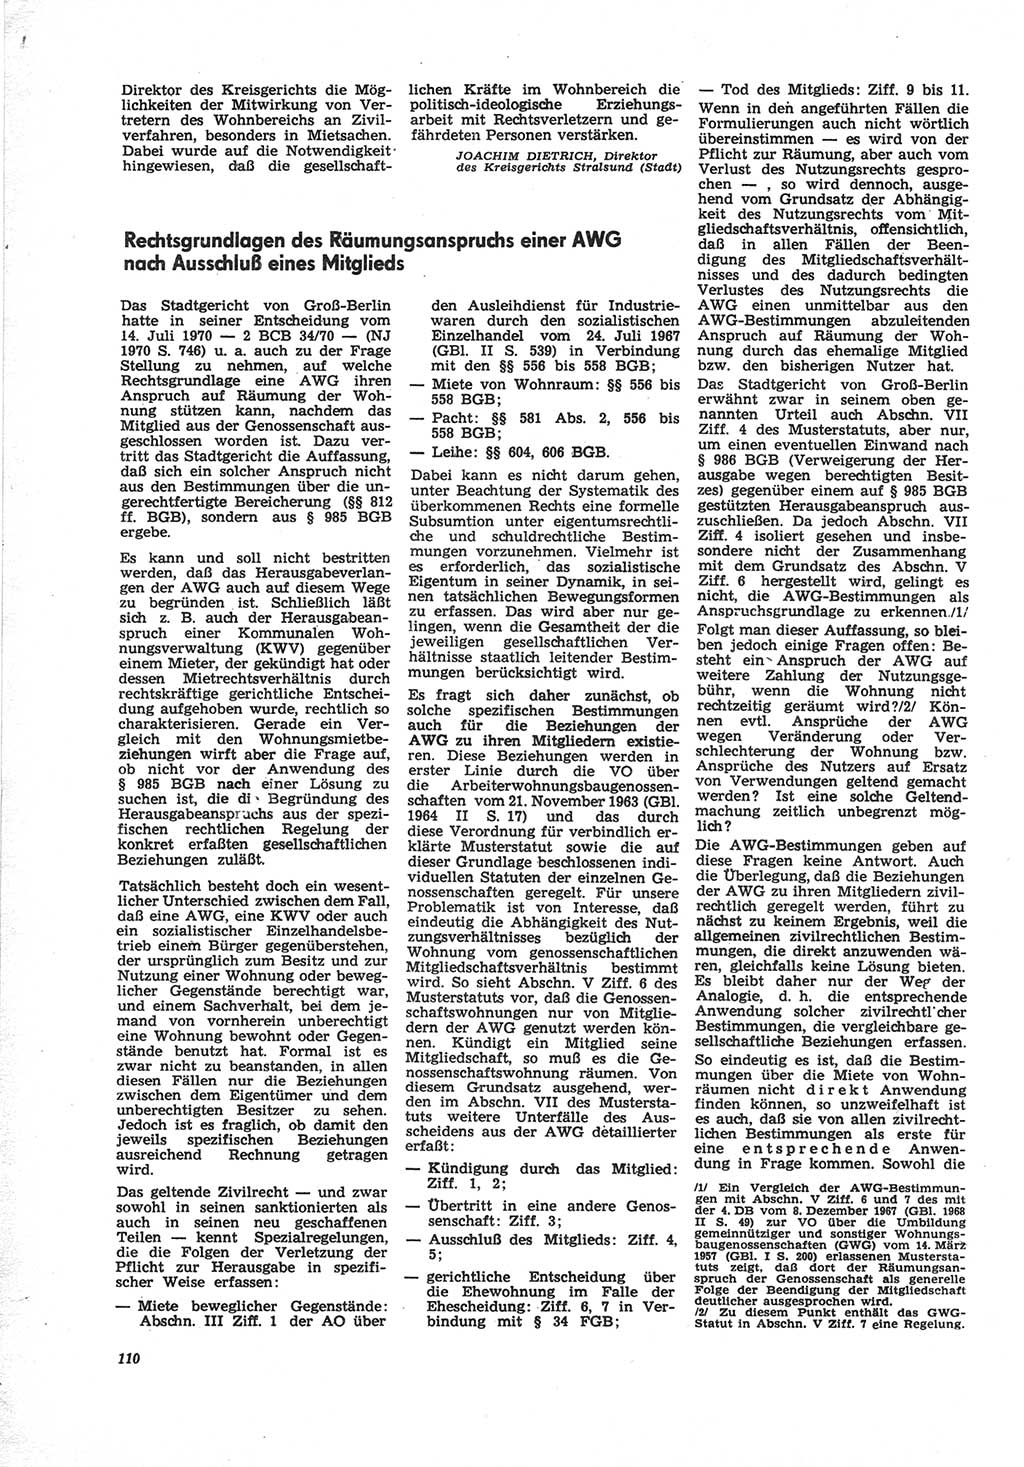 Neue Justiz (NJ), Zeitschrift für Recht und Rechtswissenschaft [Deutsche Demokratische Republik (DDR)], 25. Jahrgang 1971, Seite 110 (NJ DDR 1971, S. 110)